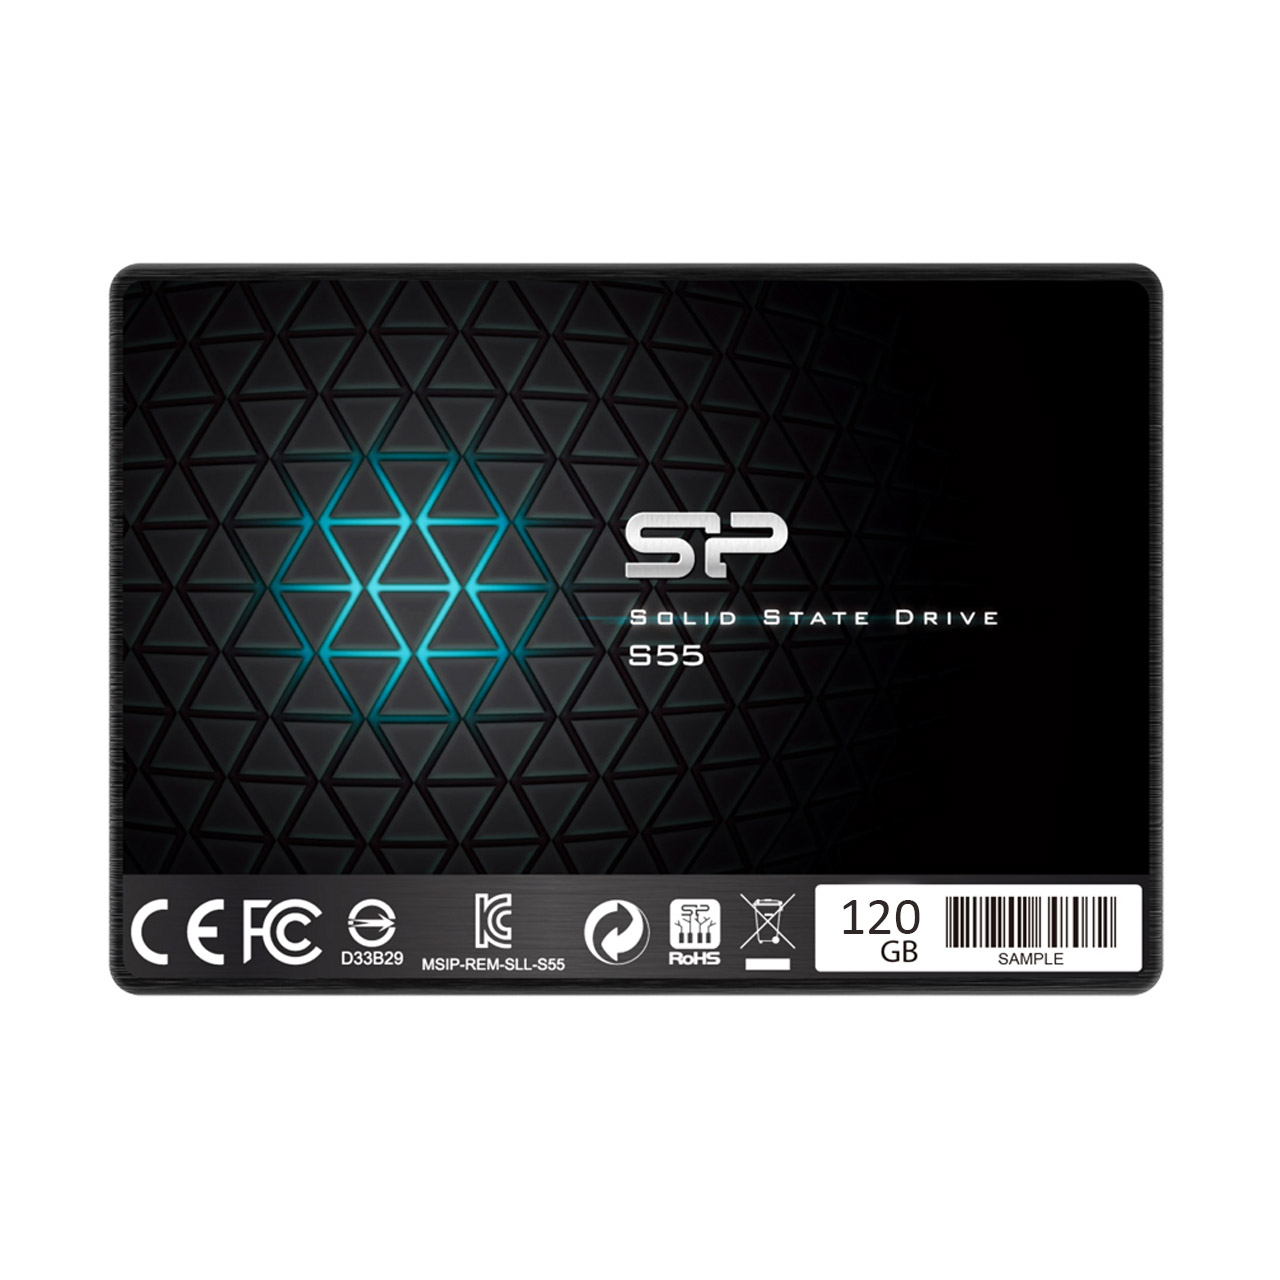 حافظه SSD برند Silicon Power مدل S55 ظرفیت 120GB 

Silicon Power S55 120GB SATA III SSD